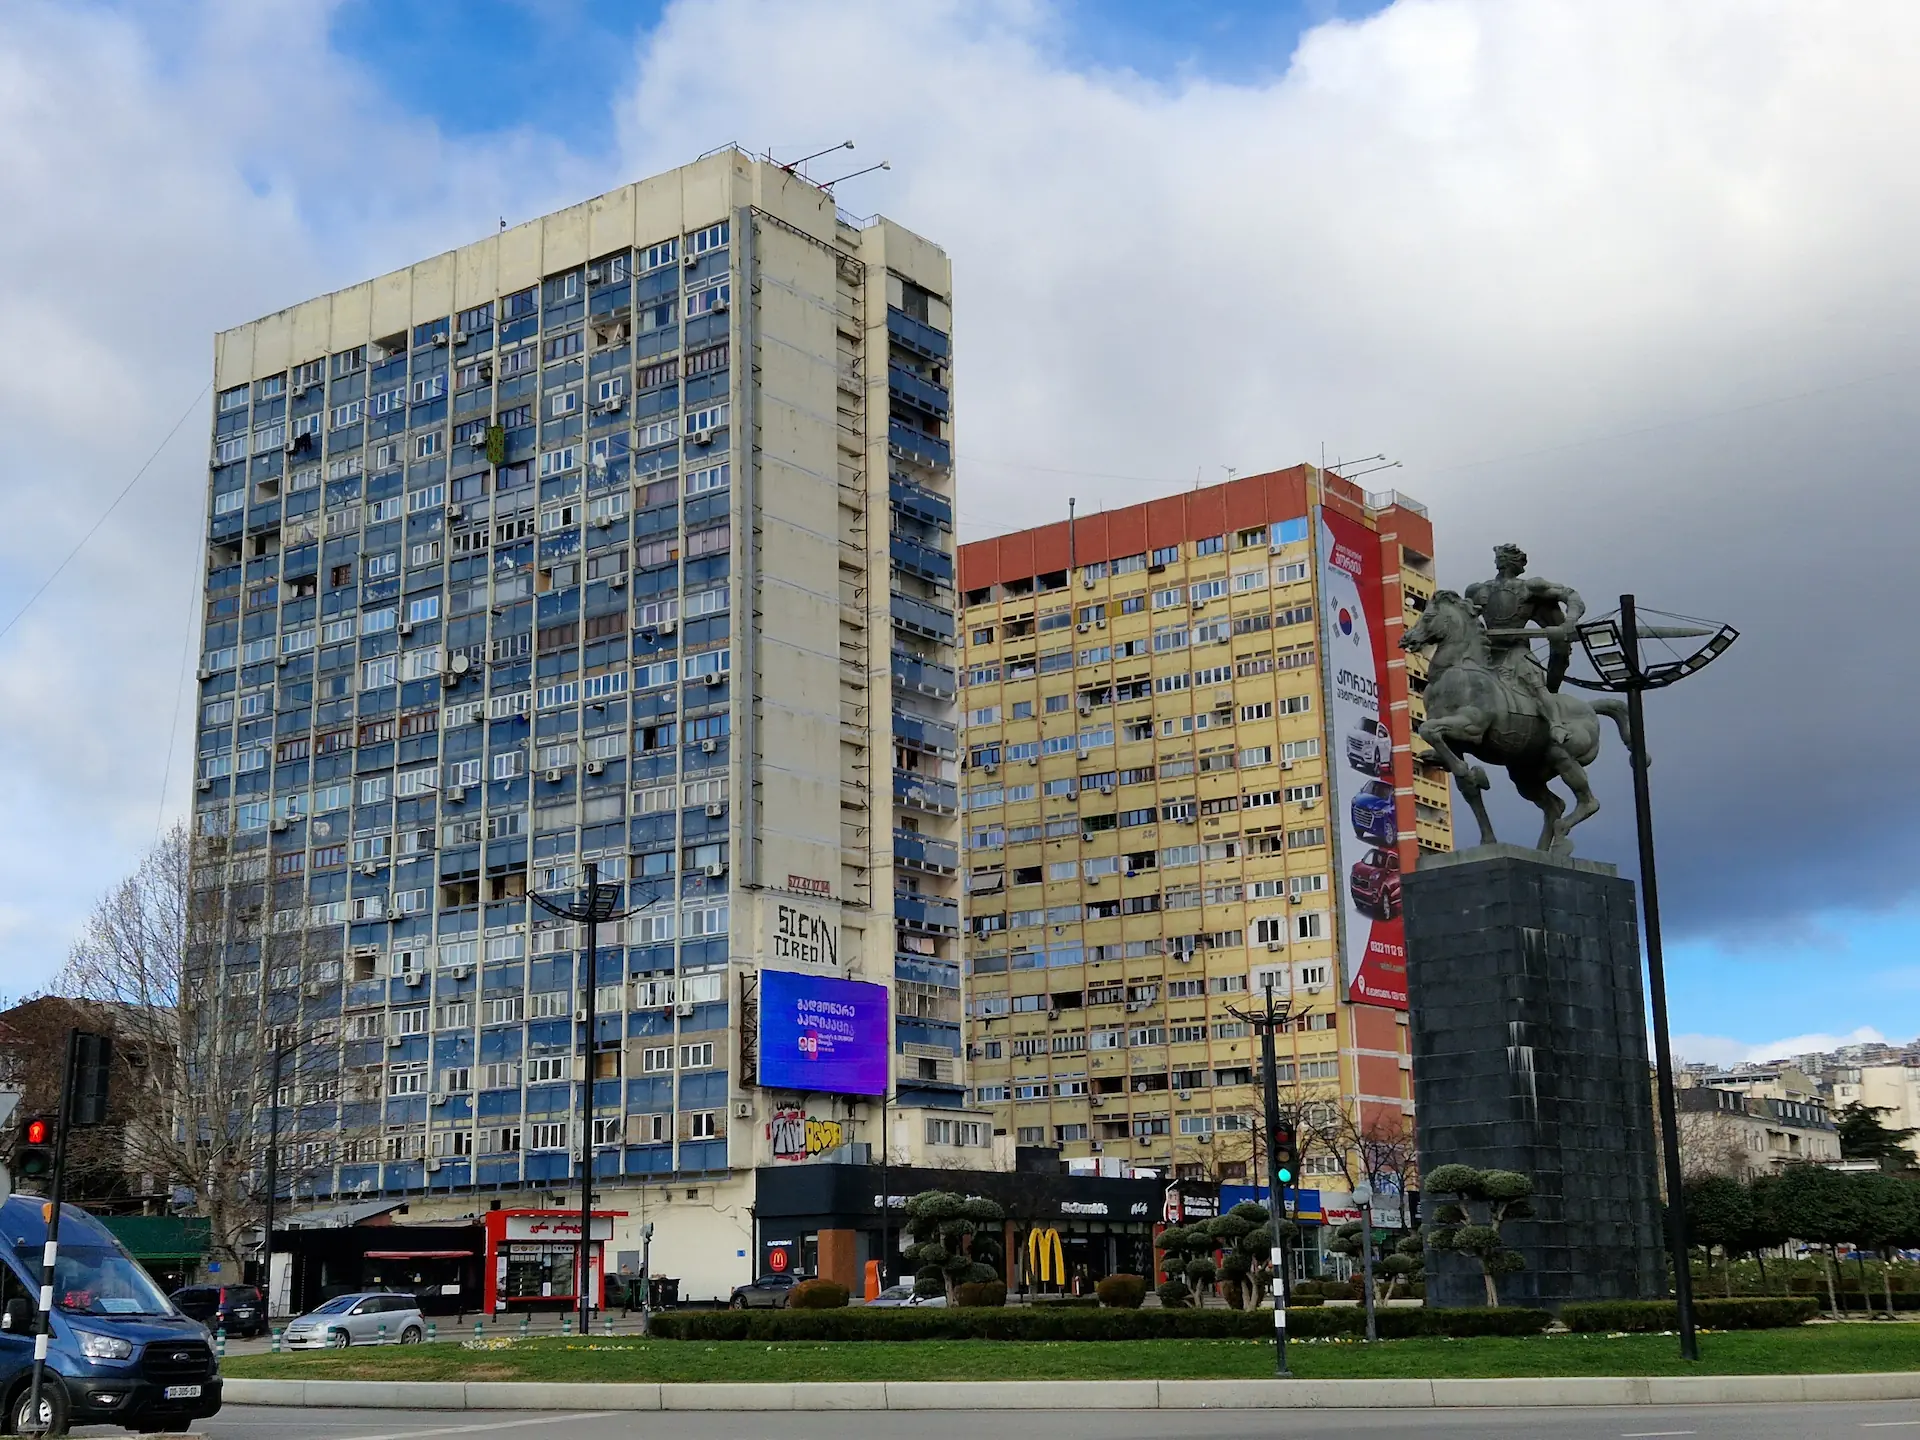 Deux bâtiments colorés au style soviétique.